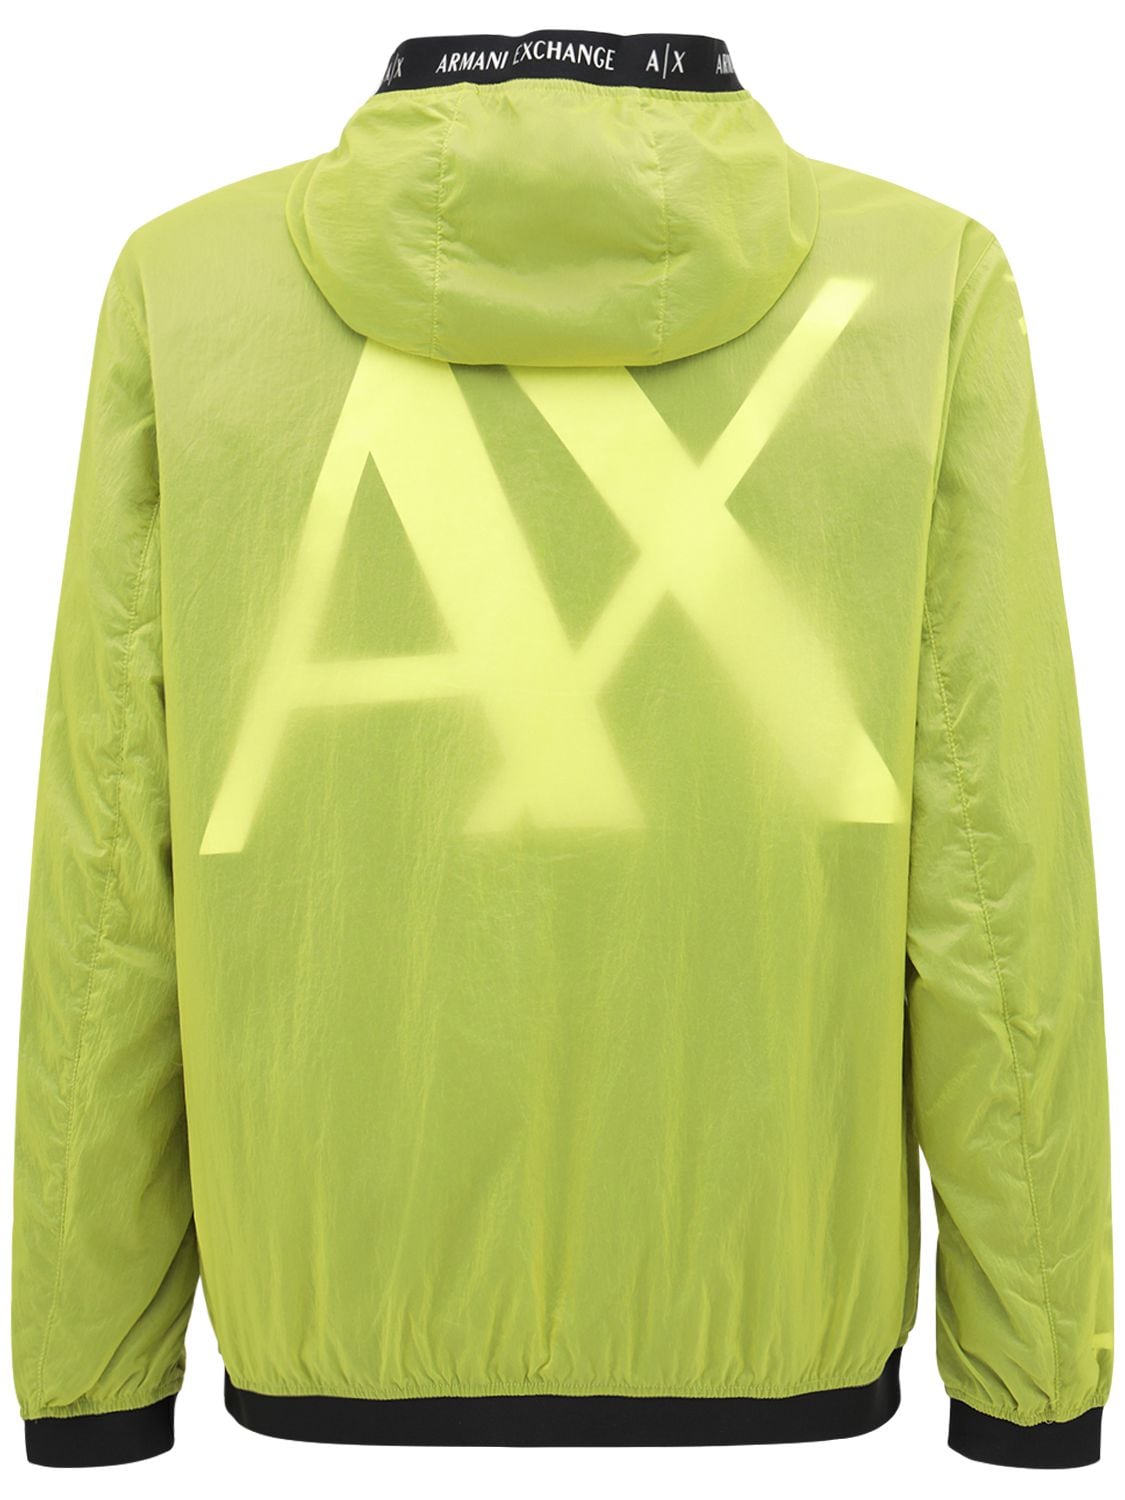 Armani Exchange Hooded Nylon Jacket In Yellow Lime